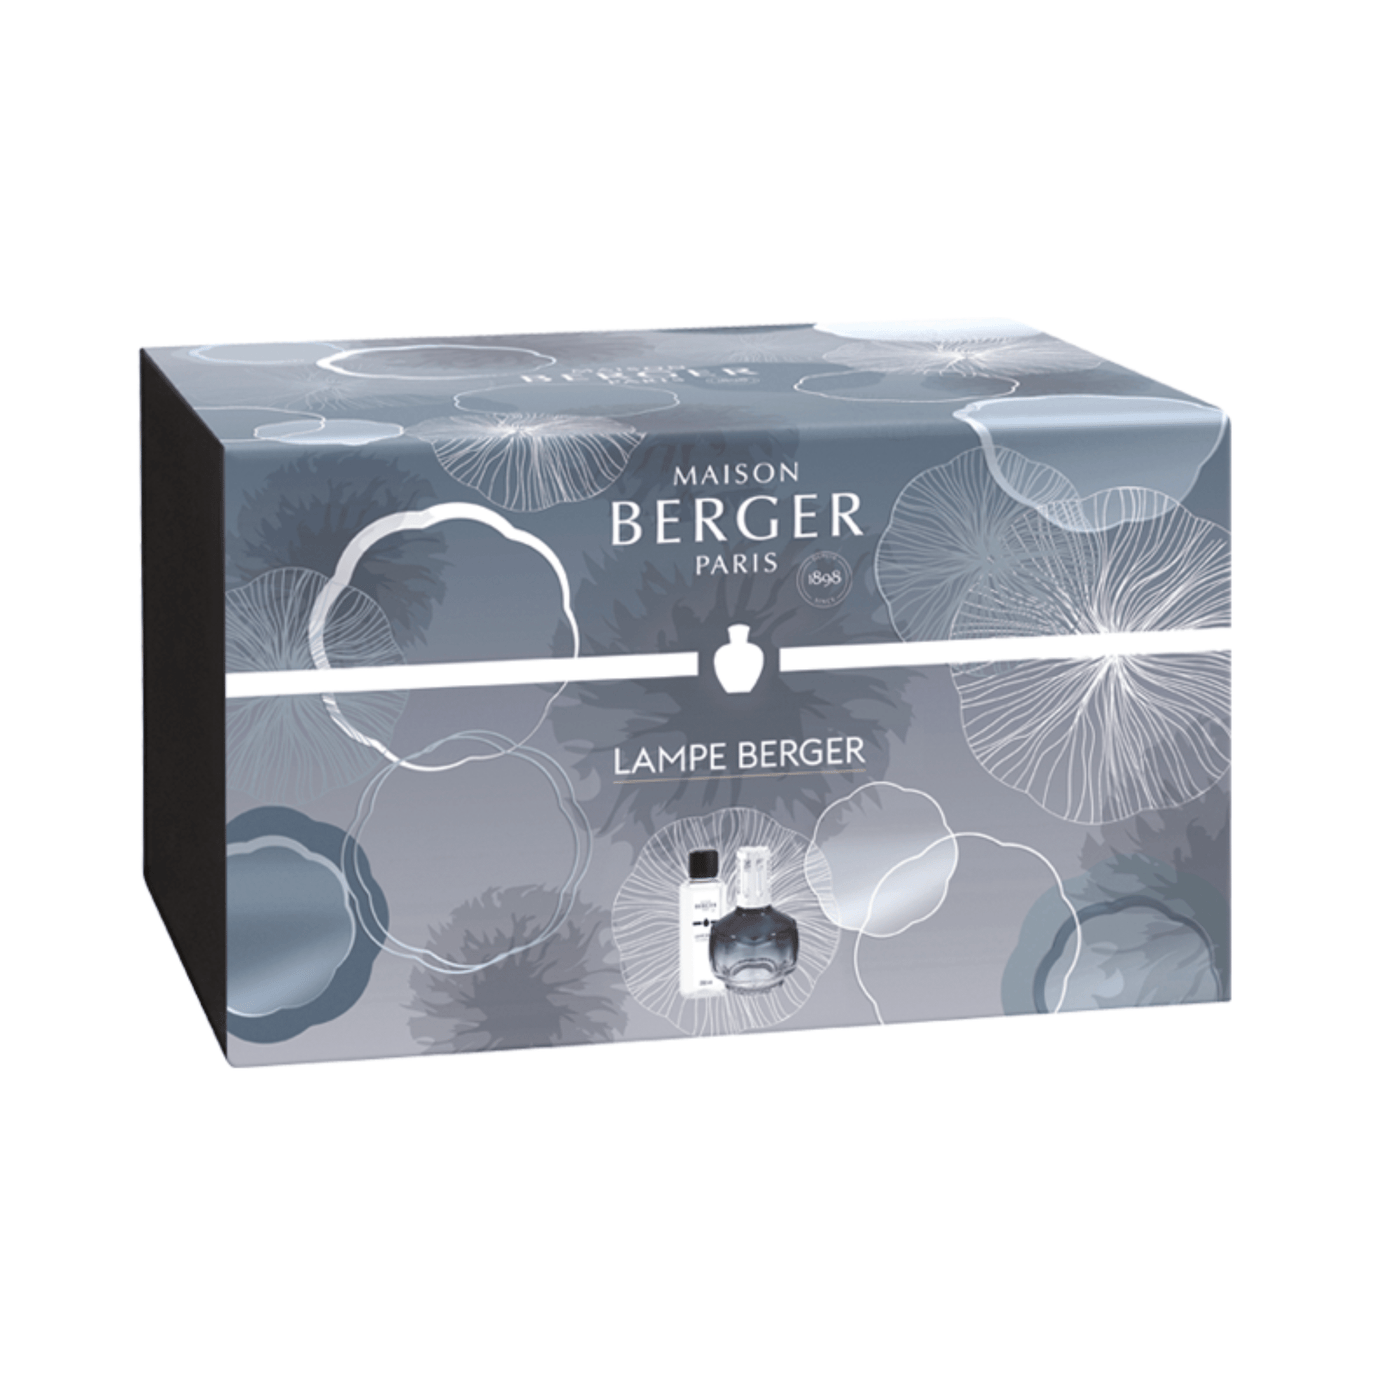 Midnight Blue Molecule Lamp Berger Gift Pack - Maison Berger Paris